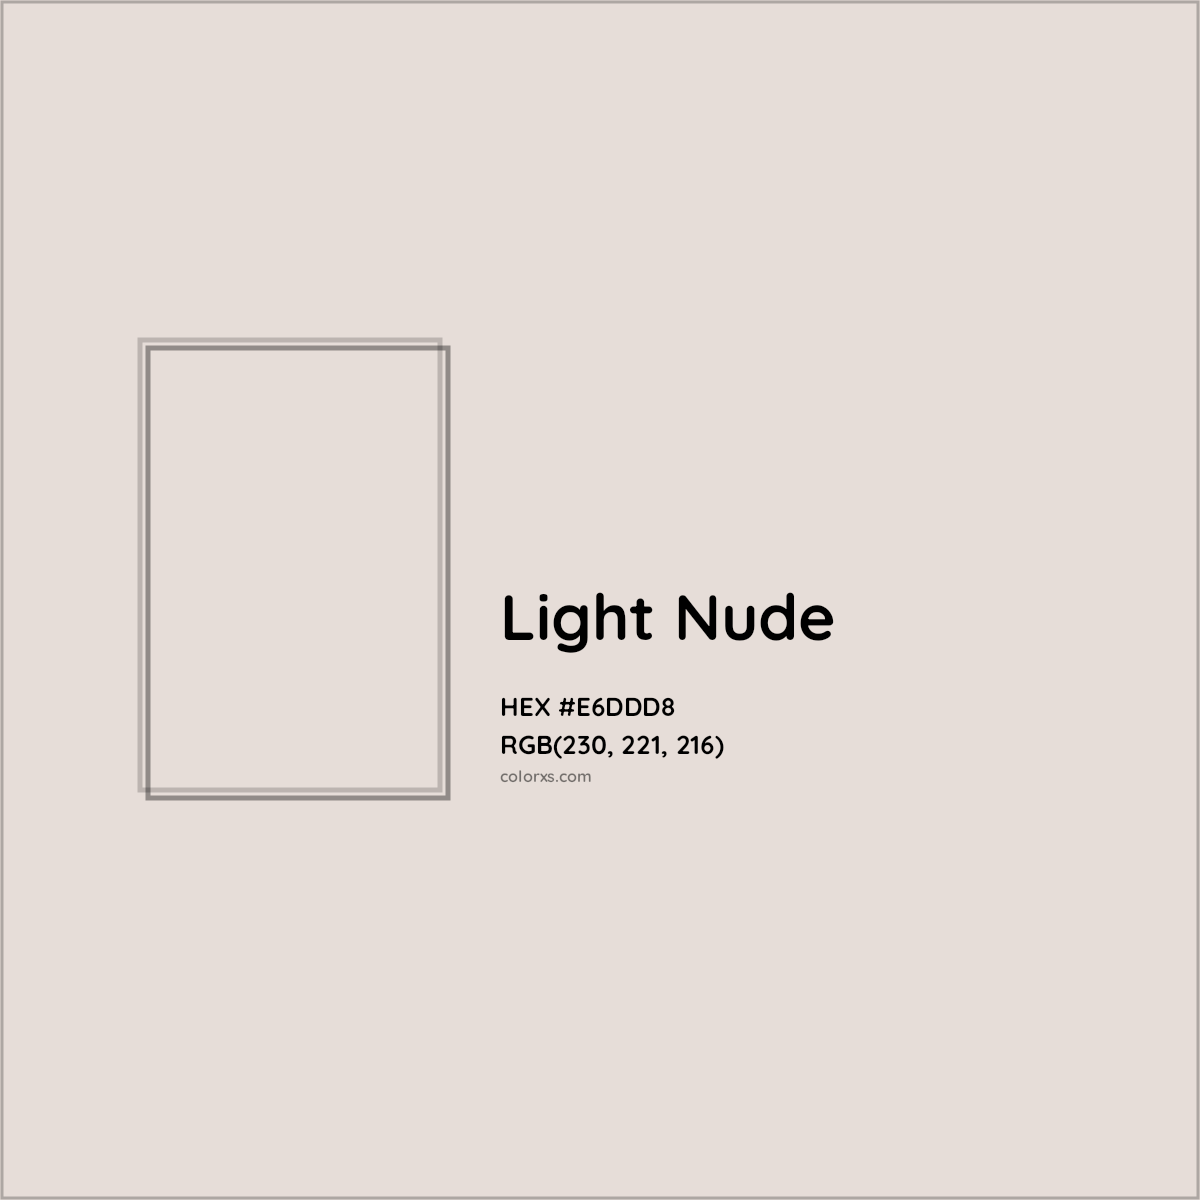 HEX #E6DDD8 Light Nude Color - Color Code